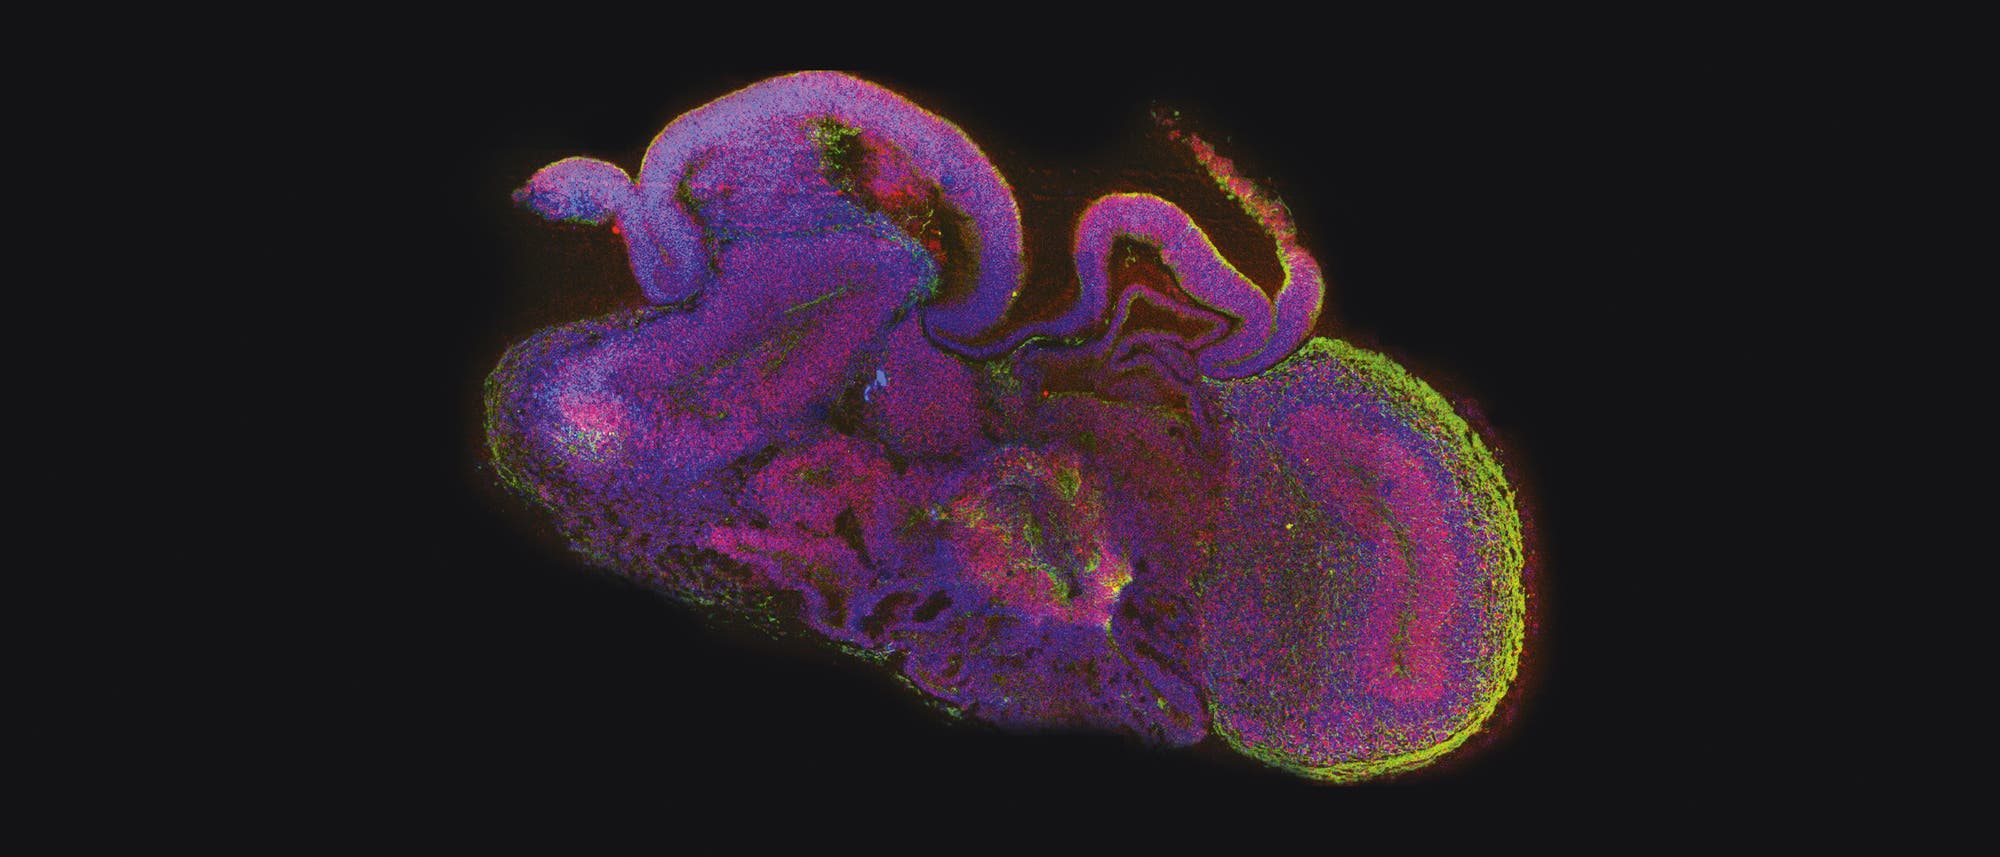 Fluoreszenzmikroskopische Aufnahme eines Minihirns